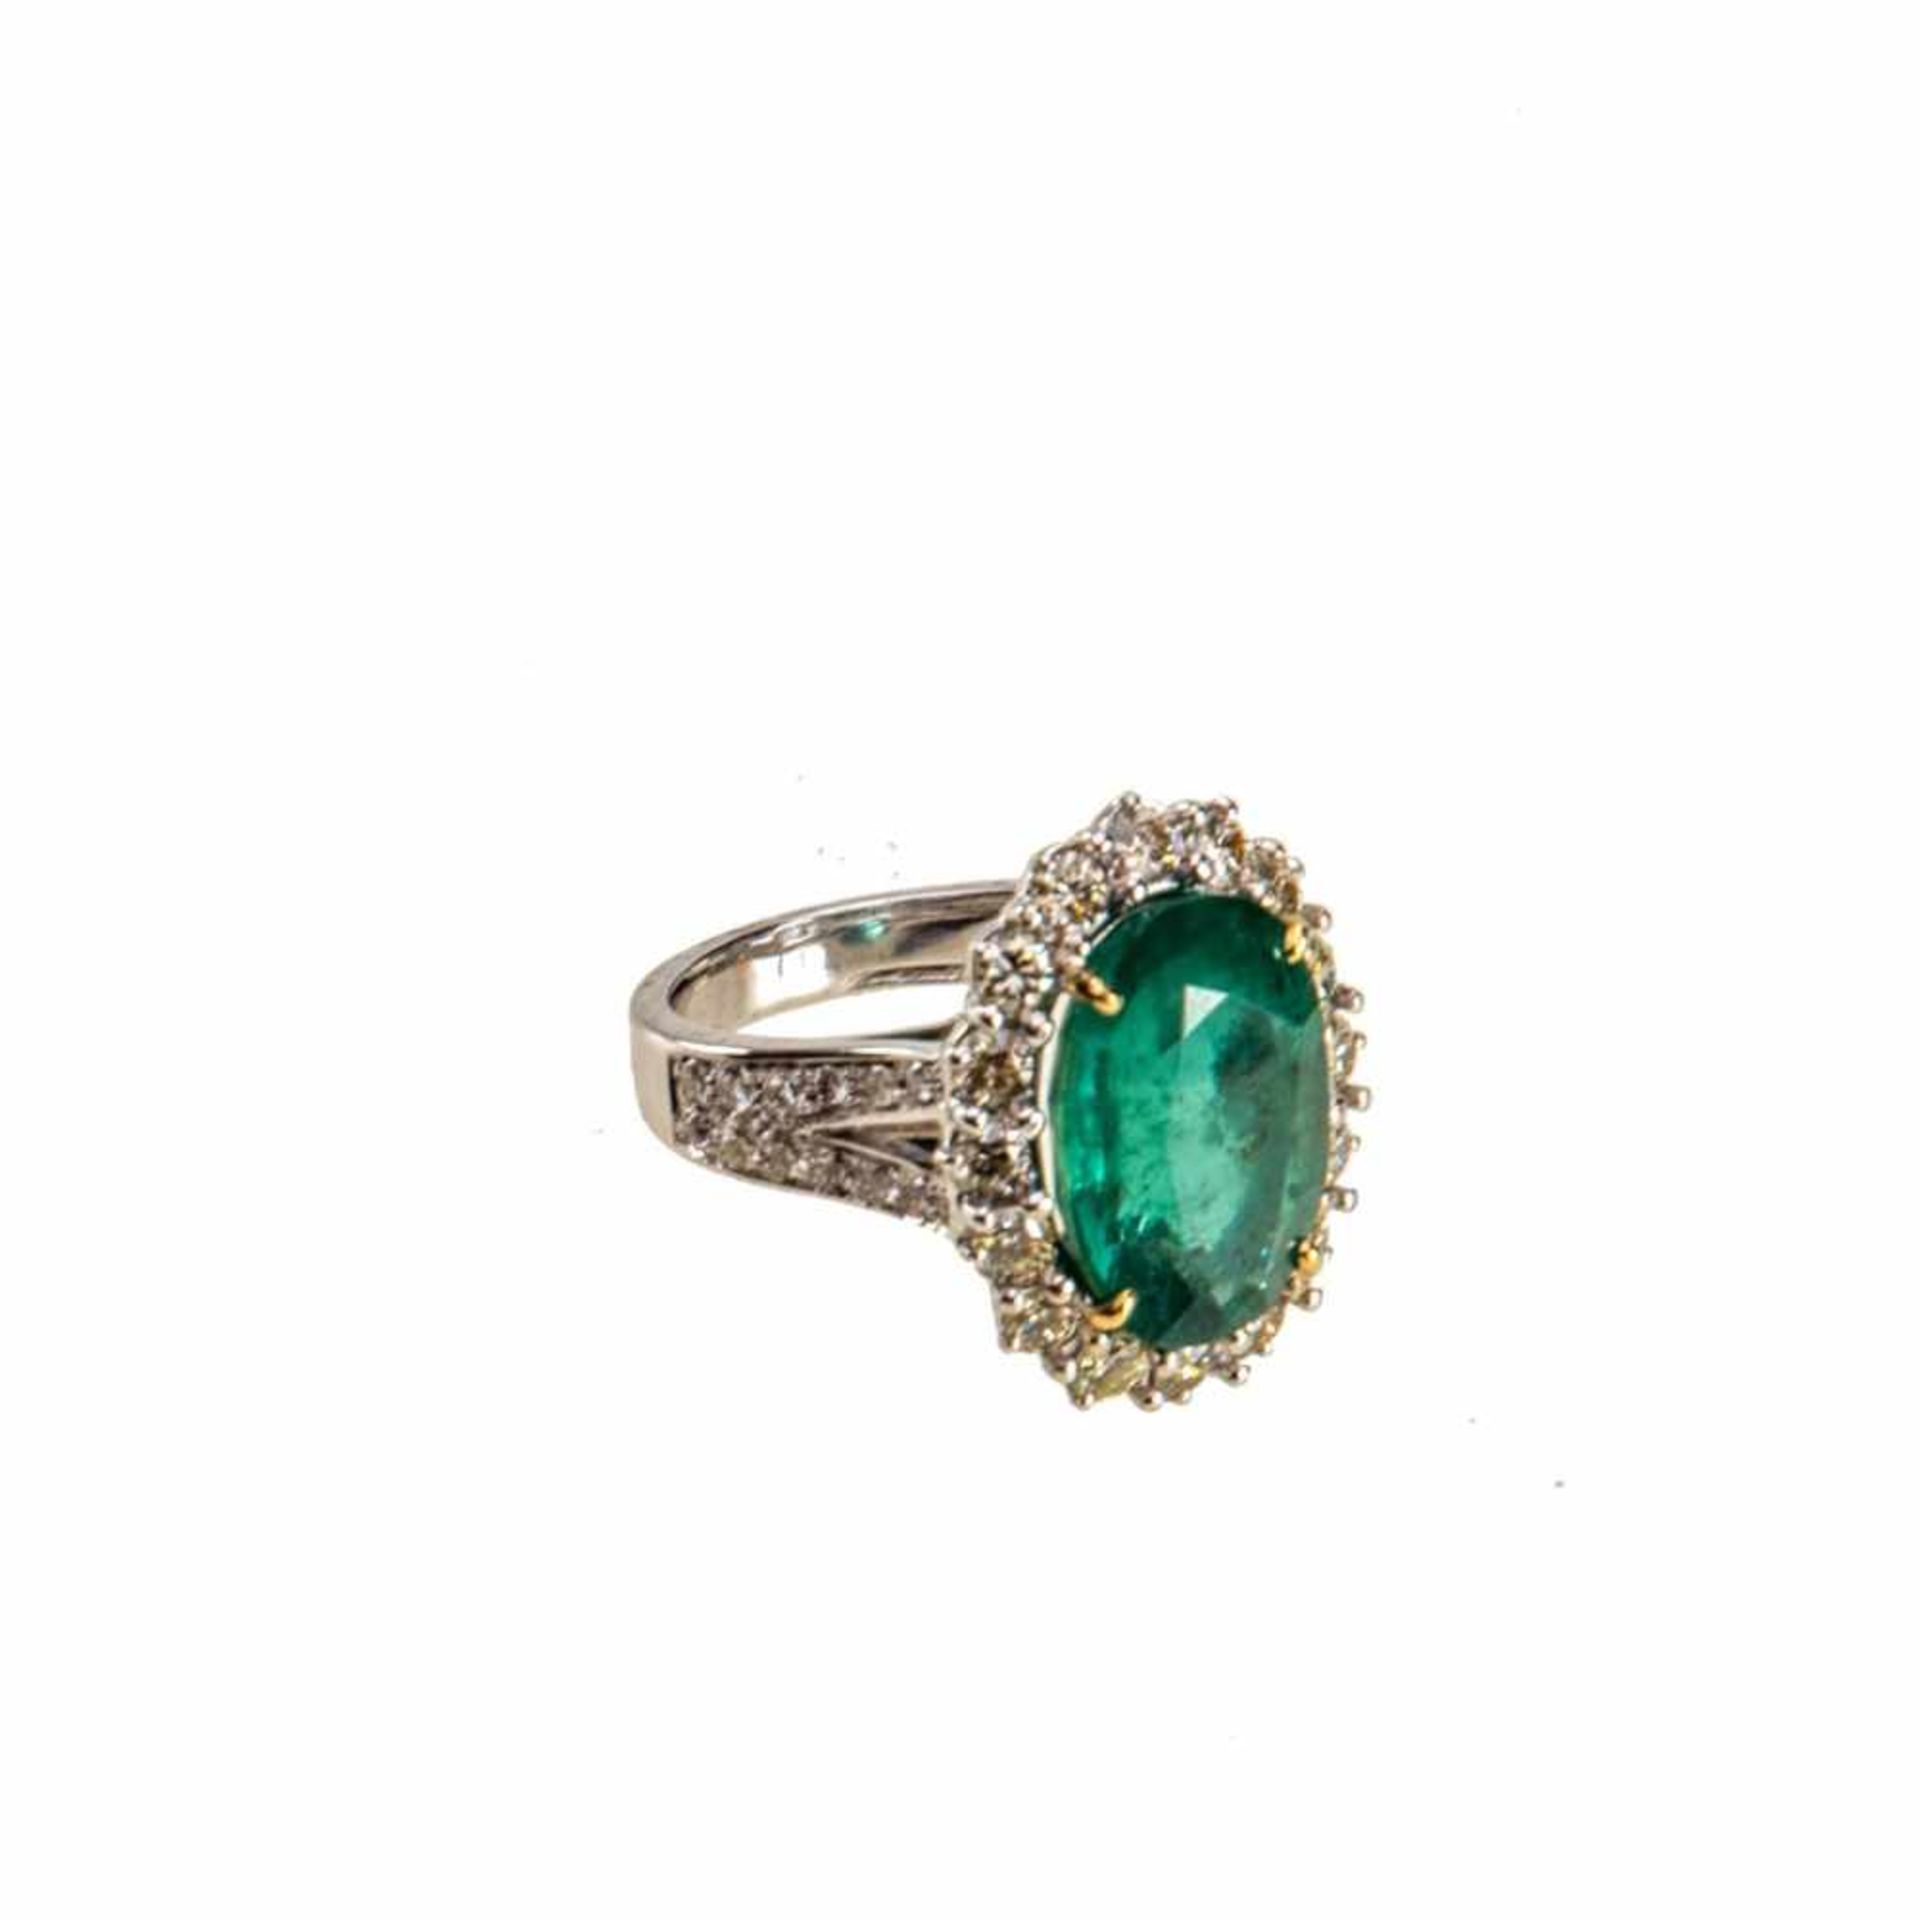 Smaragd-Brillant-Ring750er Weißgold. Glatte Ringschiene, Schulter sich gabelnd mit kleinen